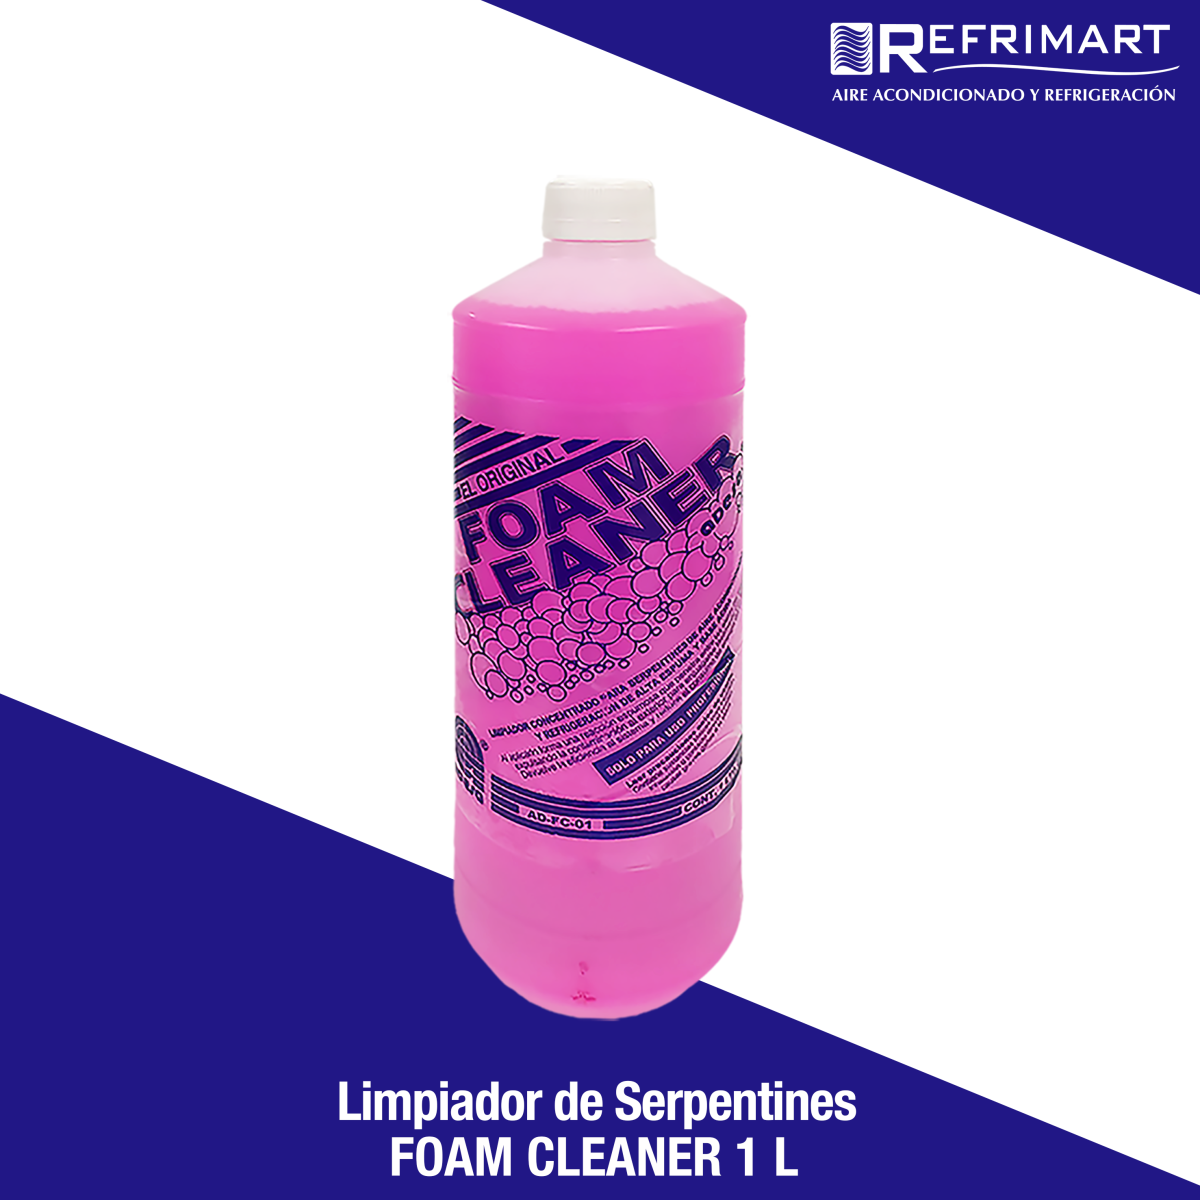 FOAM CLEANER - Limpiador de Serpentines 1 L.